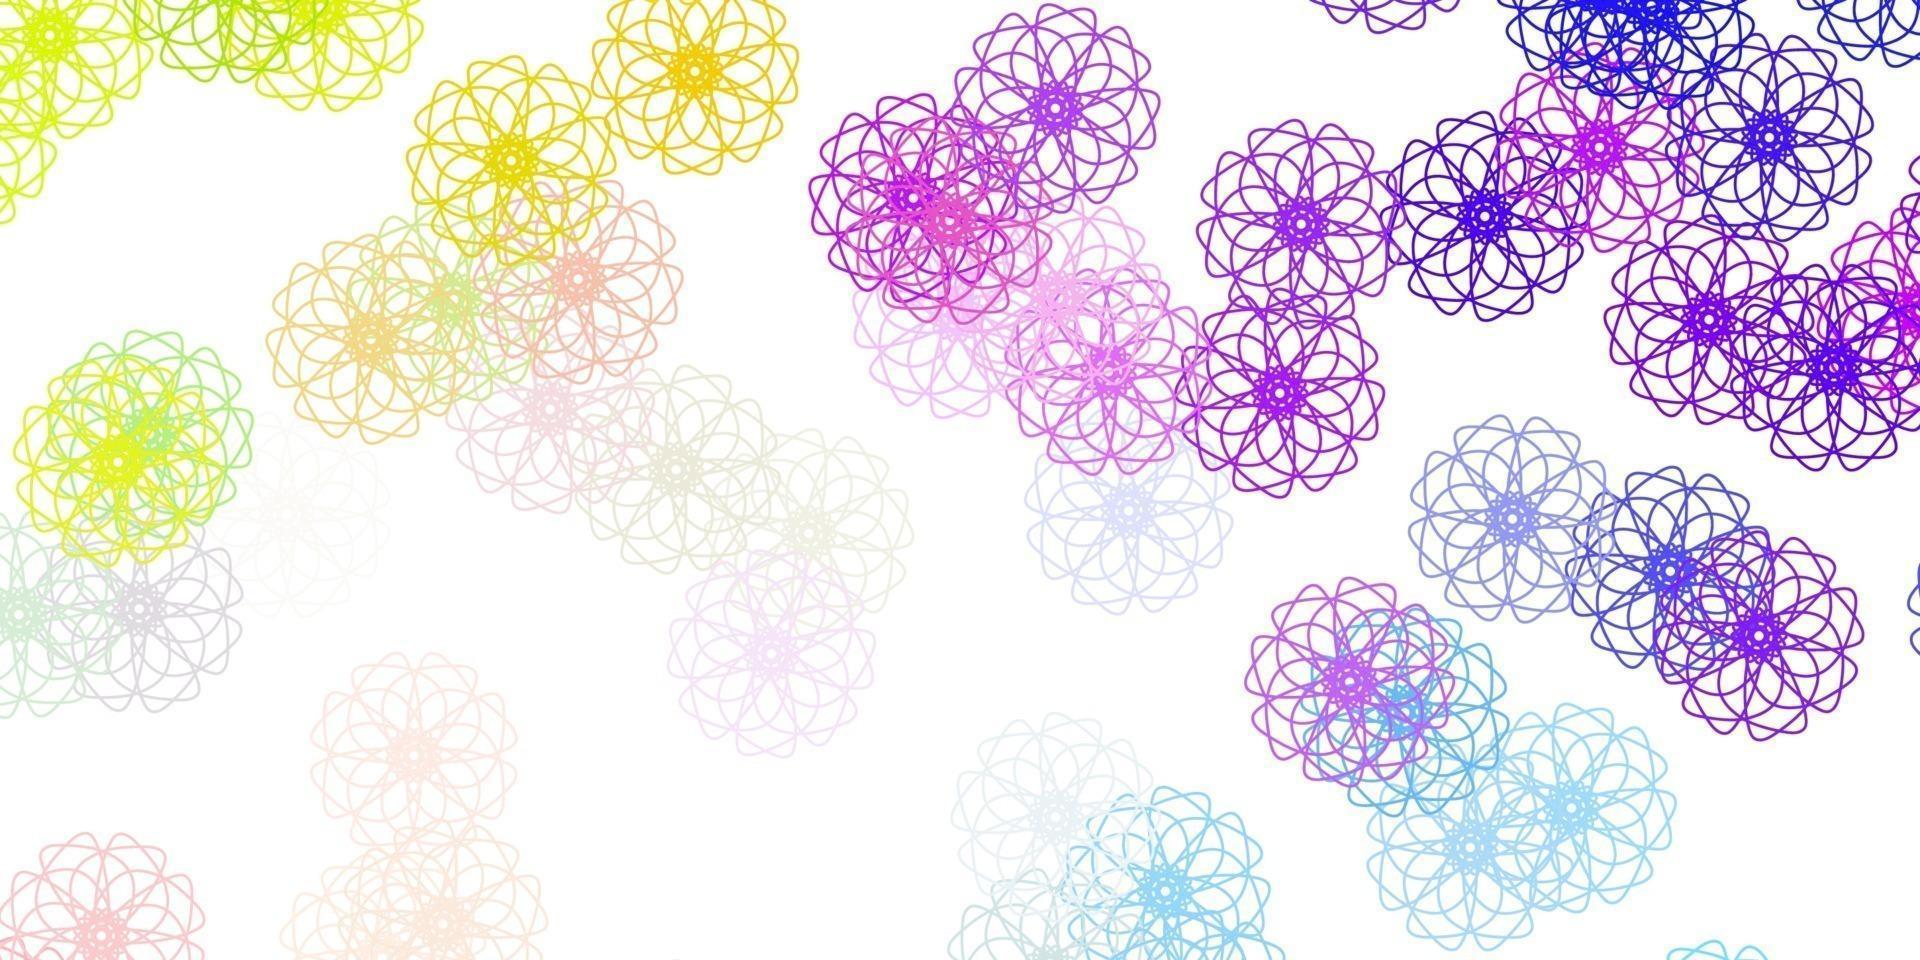 textura de doodle de vector multicolor claro con flores.